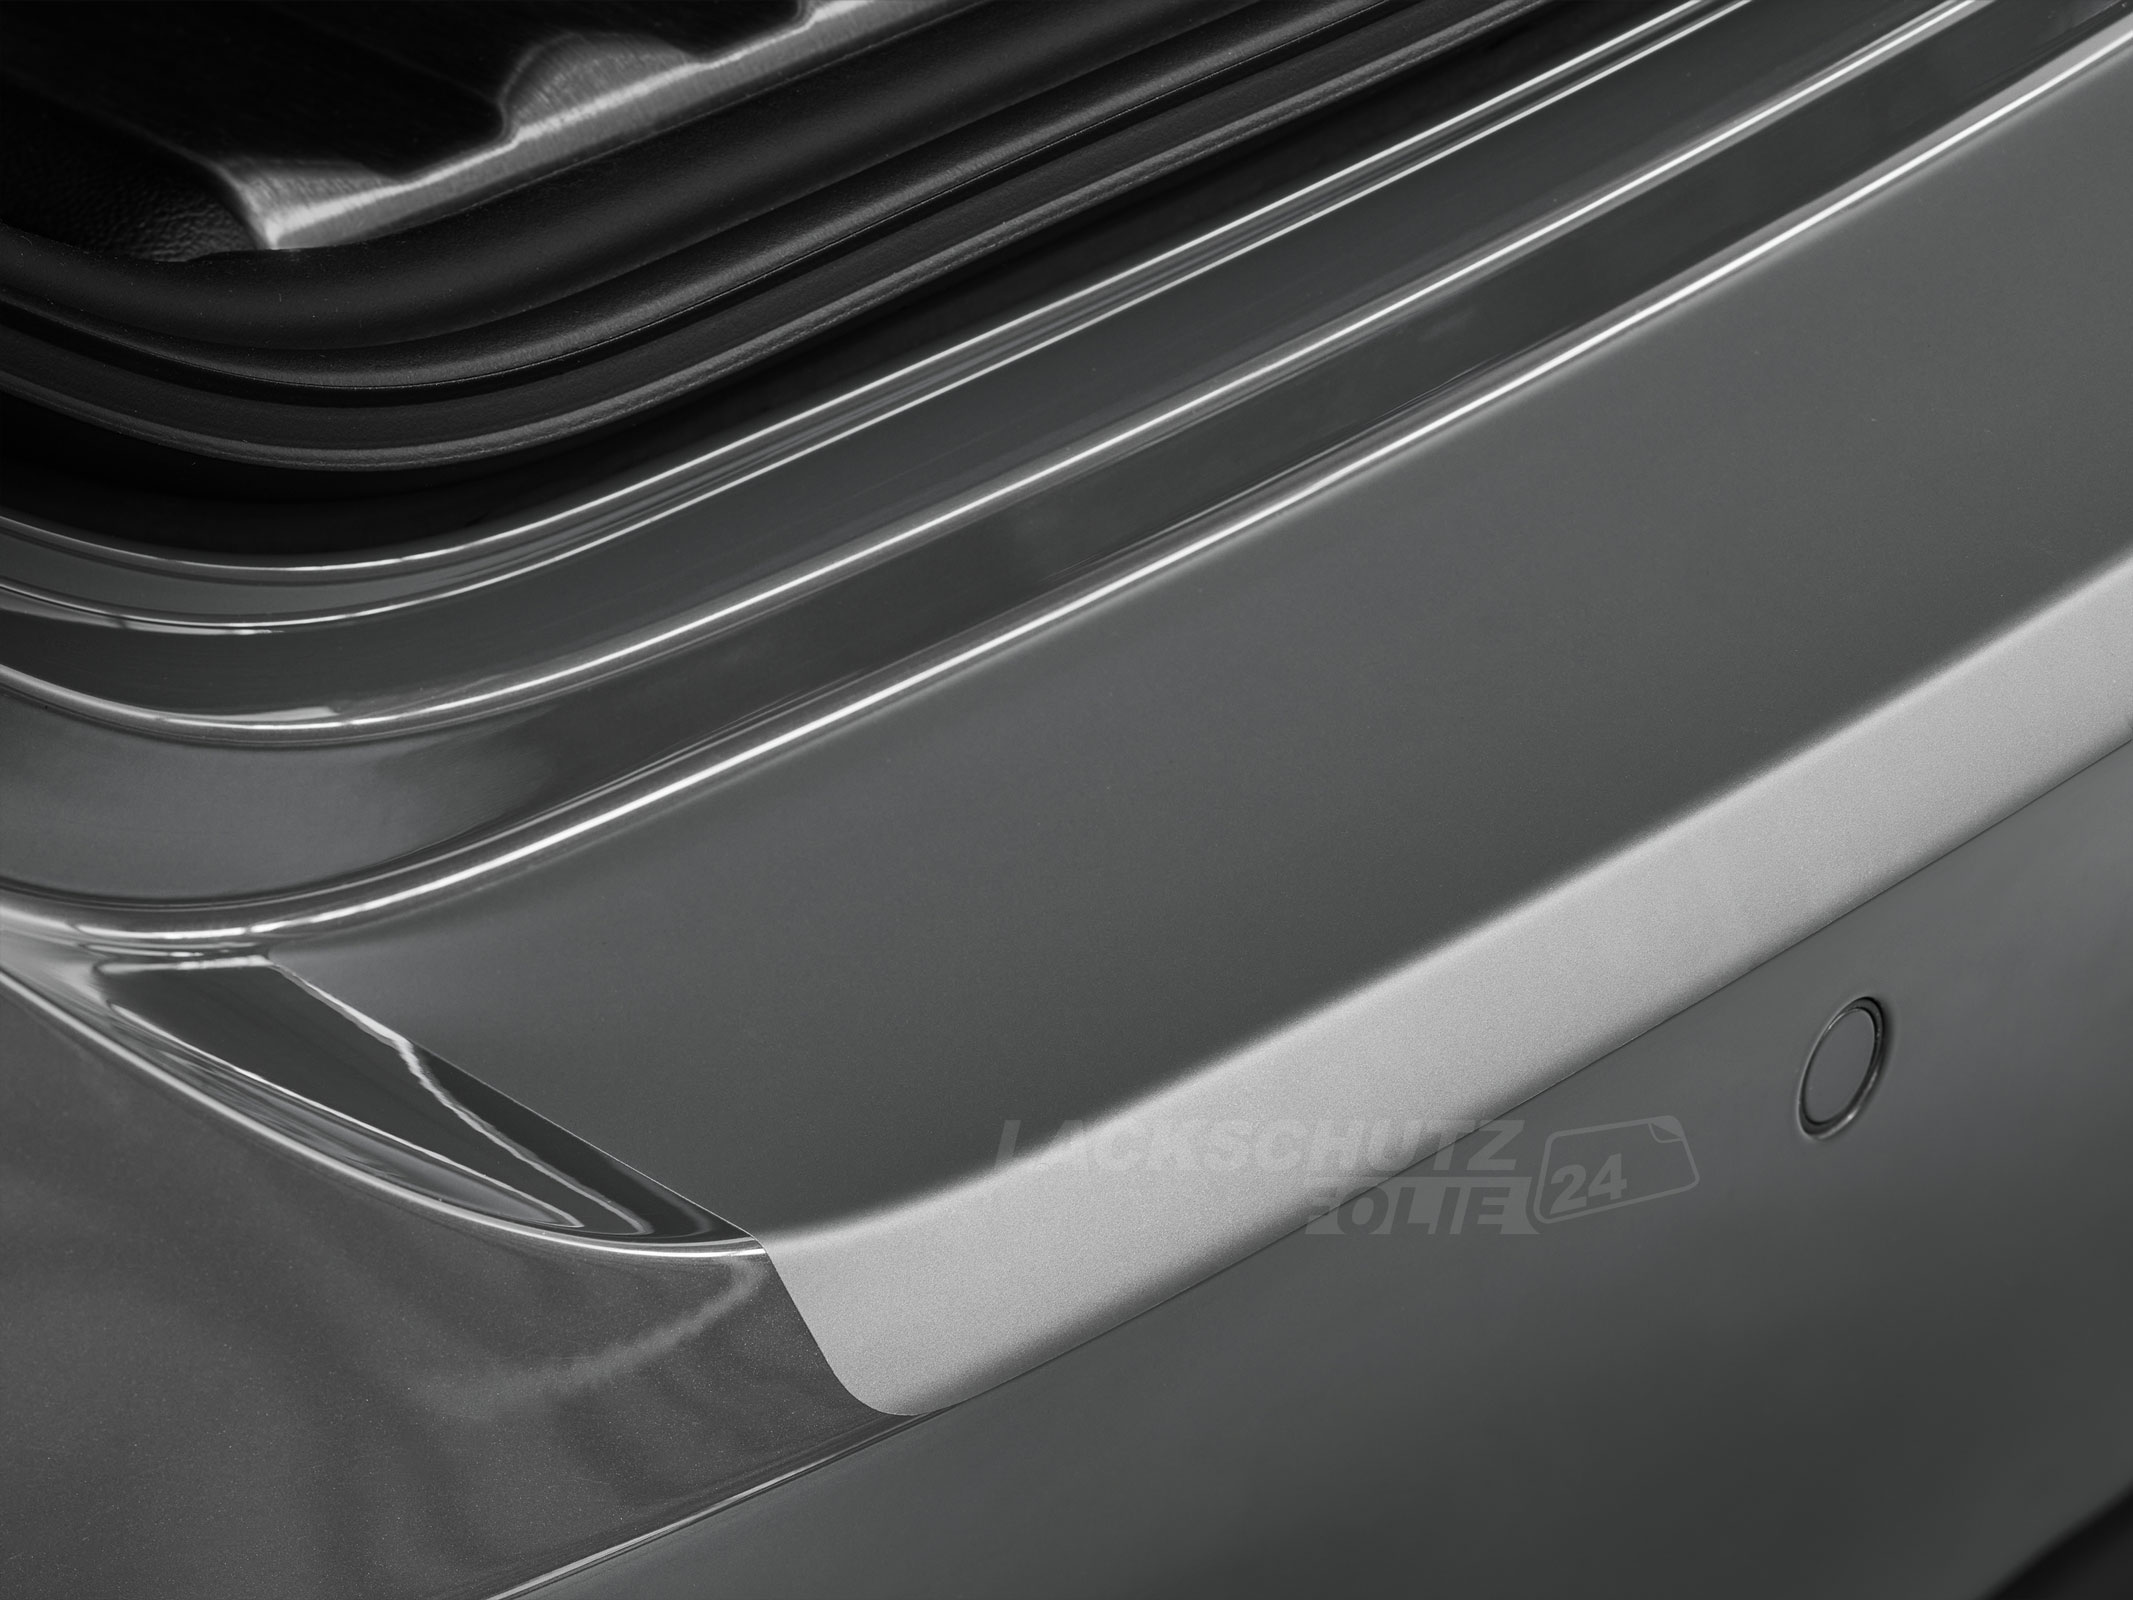 Ladekantenschutzfolie - Transparent Glatt MATT 110 µm stark  für BMW 1er Coupe Typ E82, BJ 10/2007-10/2013